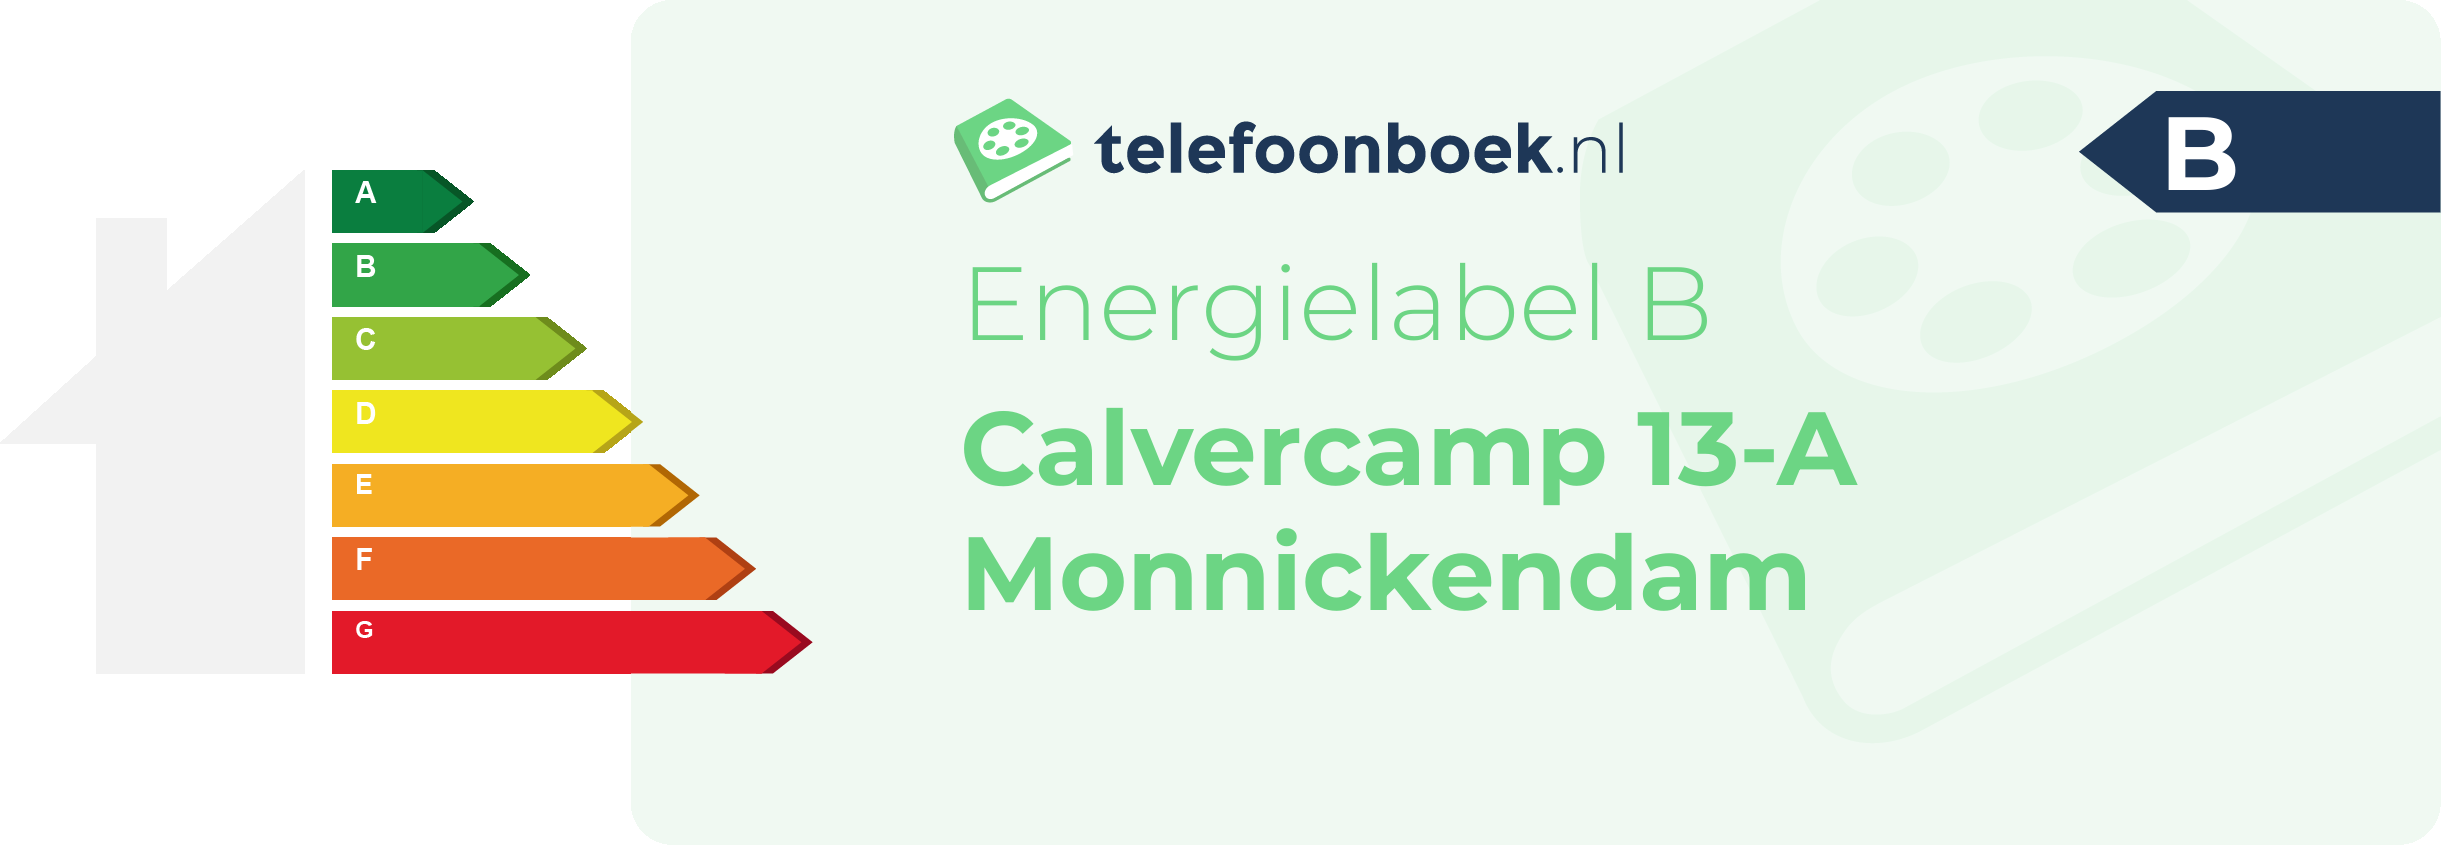 Energielabel Calvercamp 13-A Monnickendam